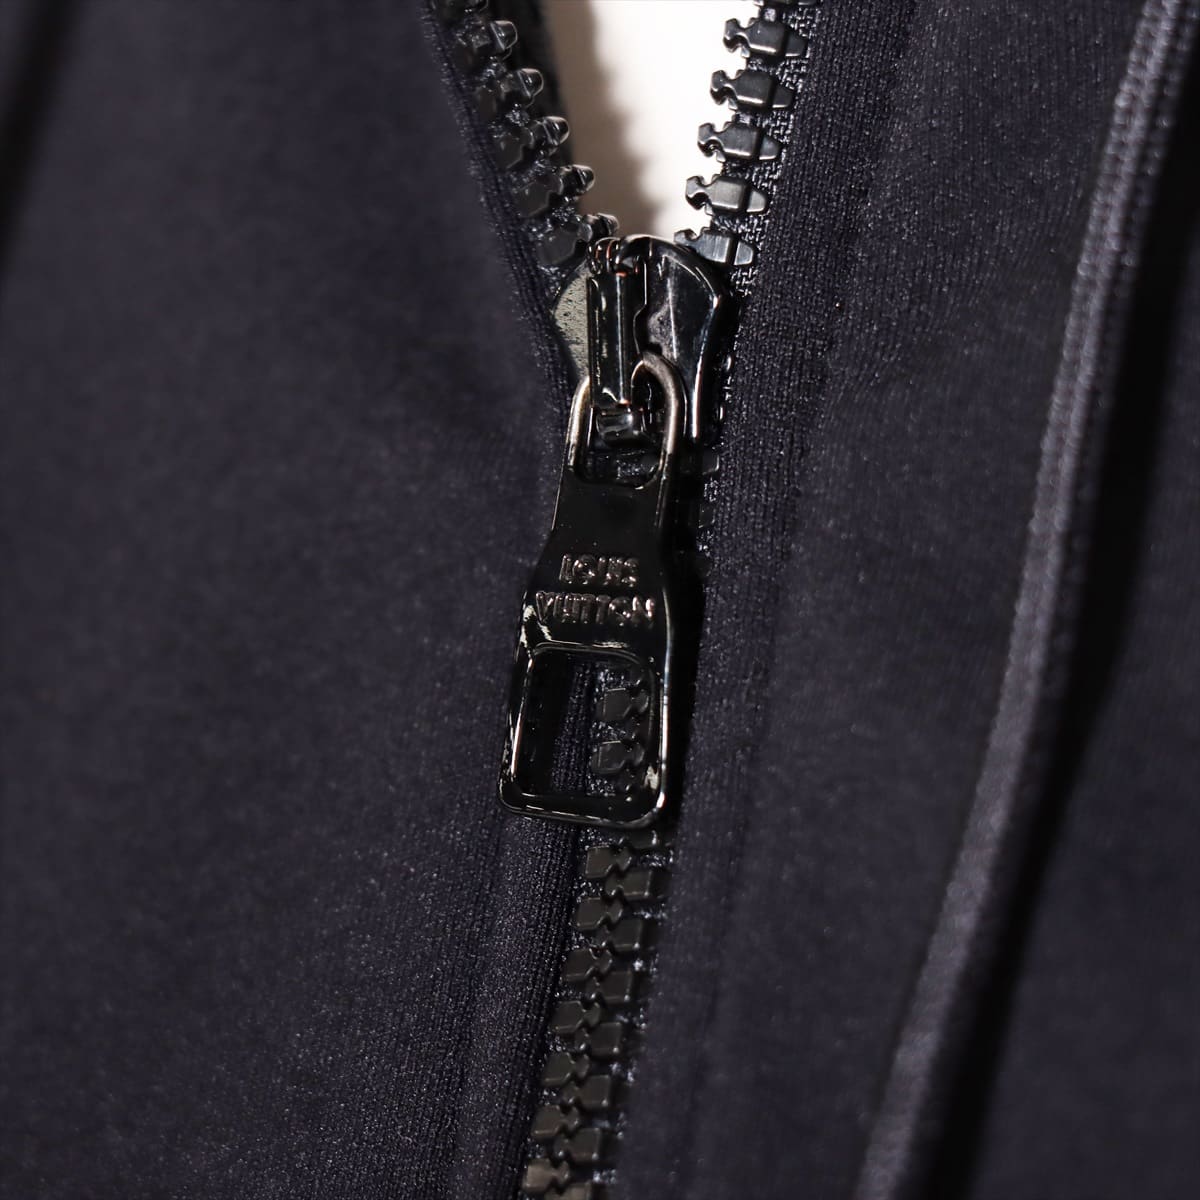 Louis Vuitton x NIGO RM202M Polyamide Sweatsuit S Men's Black  reflective LV logo print